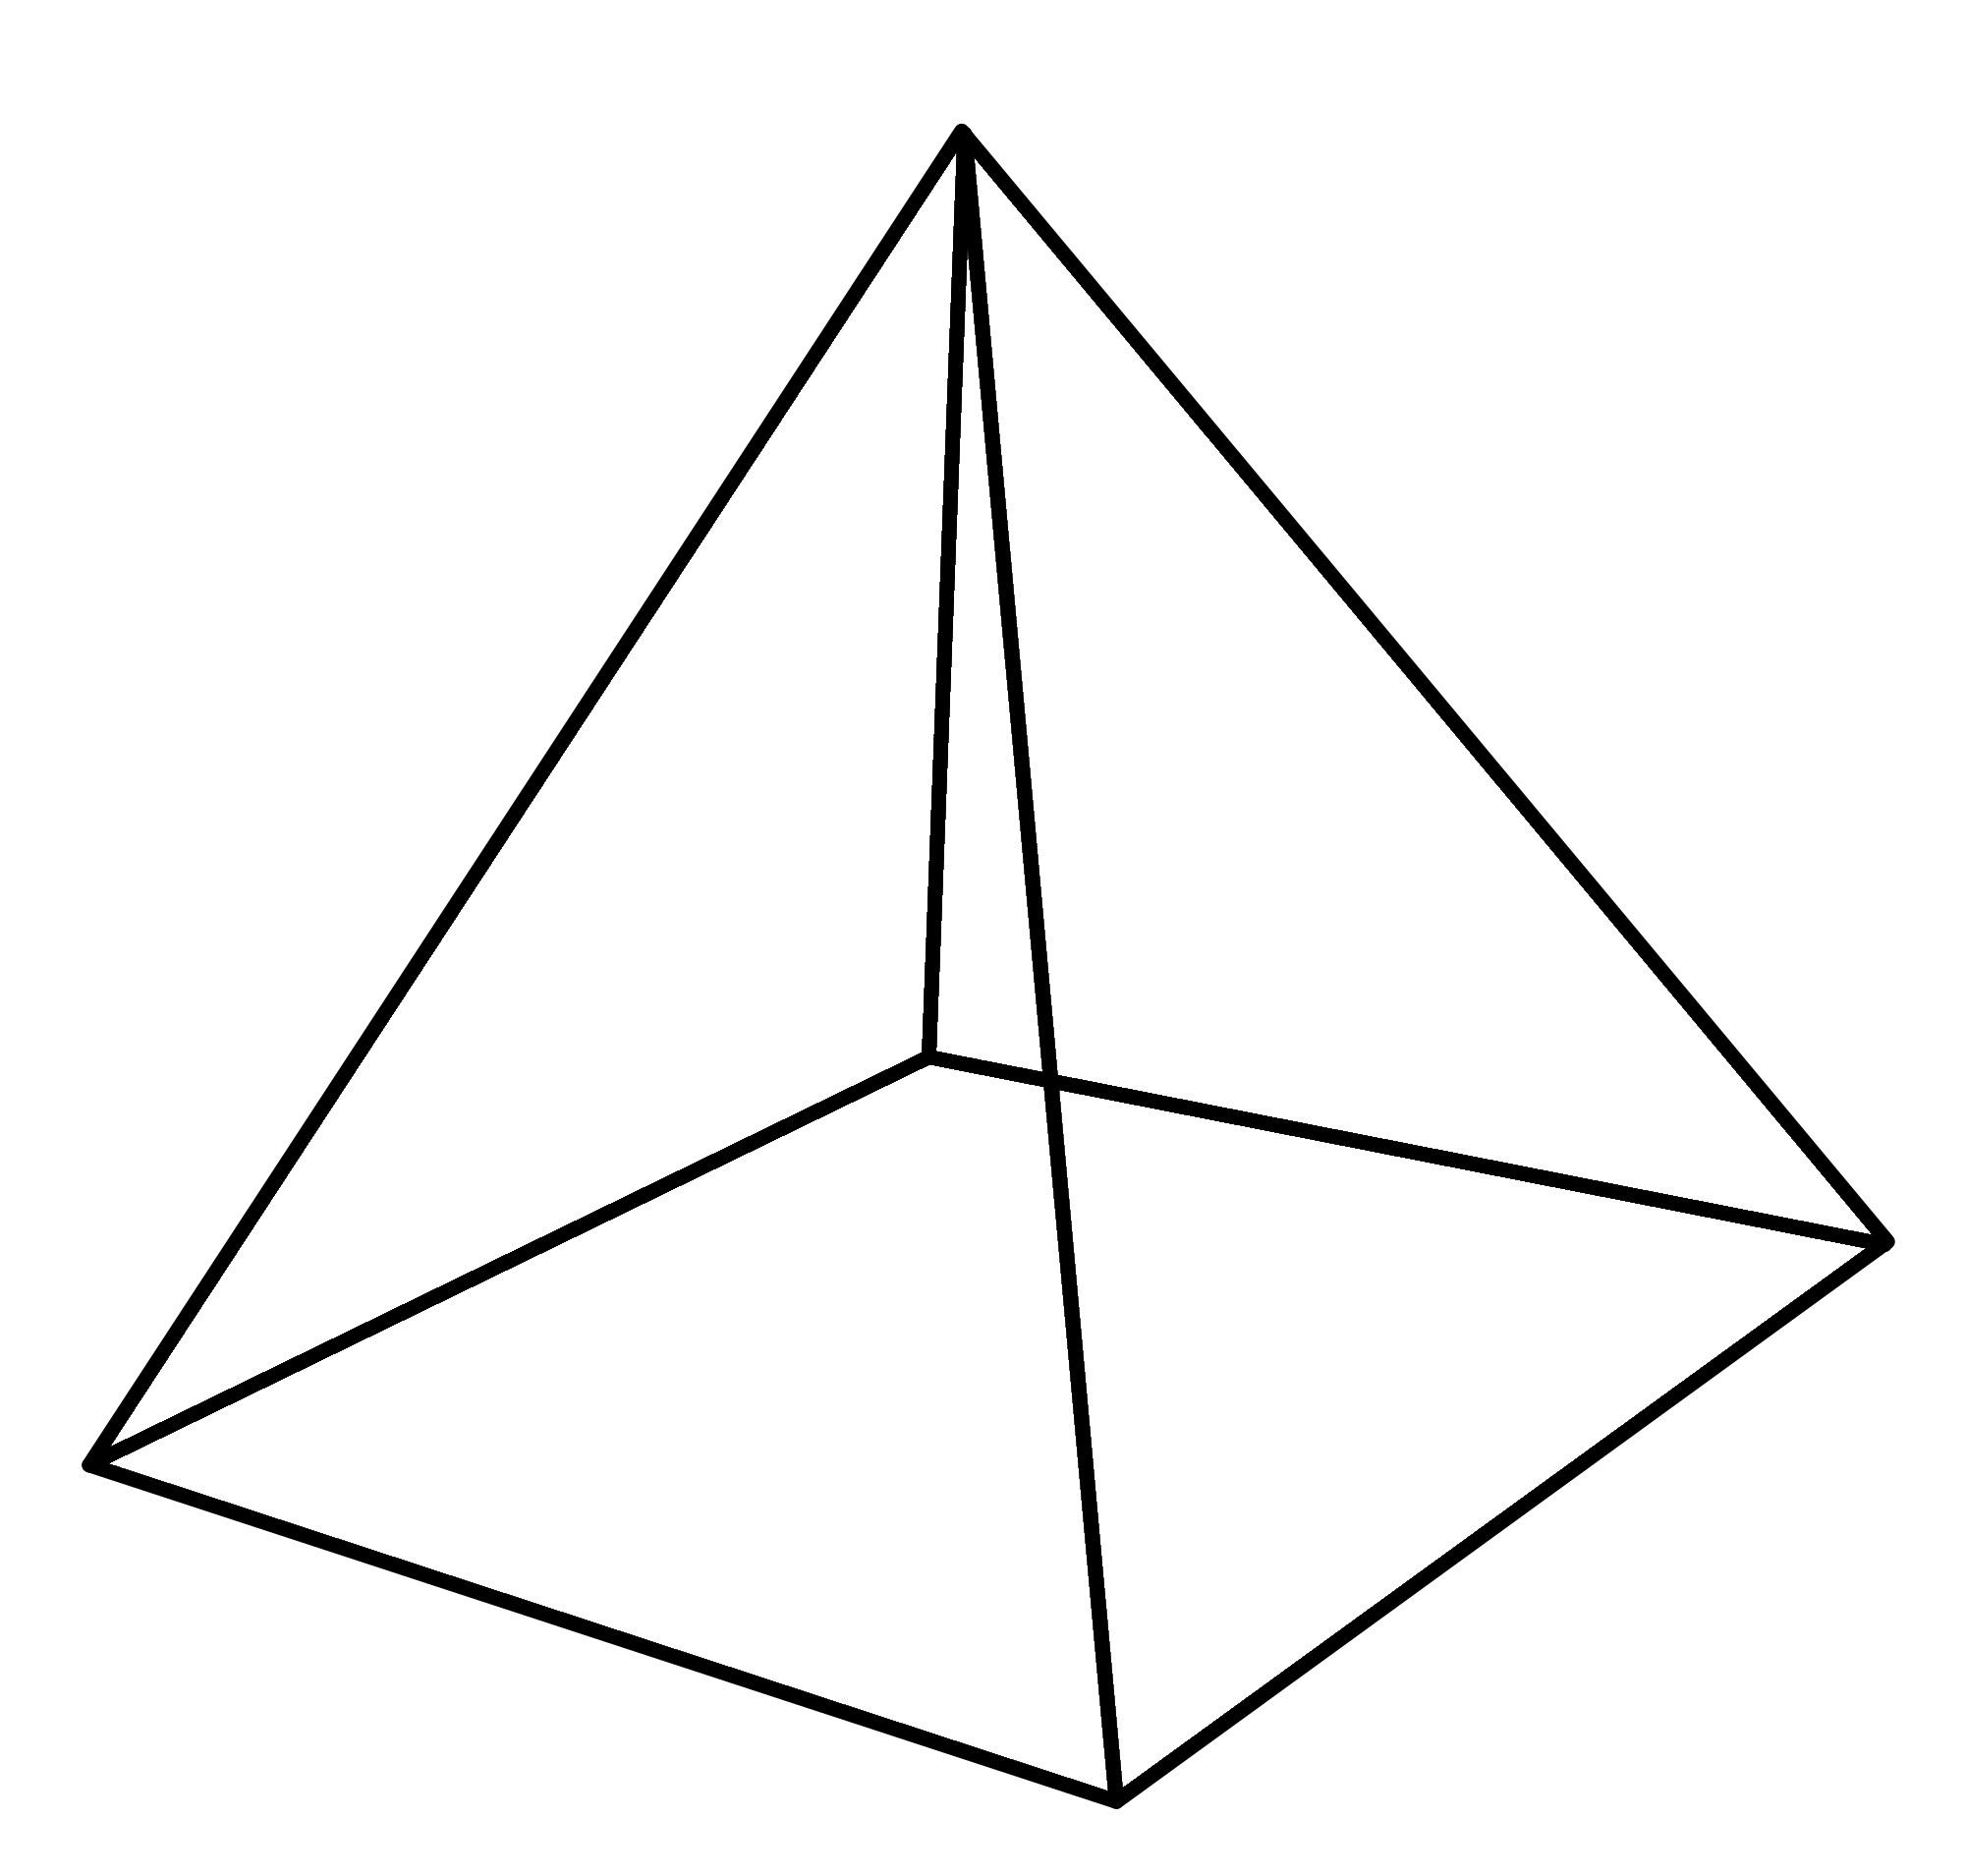 Раскраски контуры для вырезания геометрических фигур  Раскраски геометрические фигуры из бумаги пирамида макет, пирамида шаблон из бумаги, пирамида